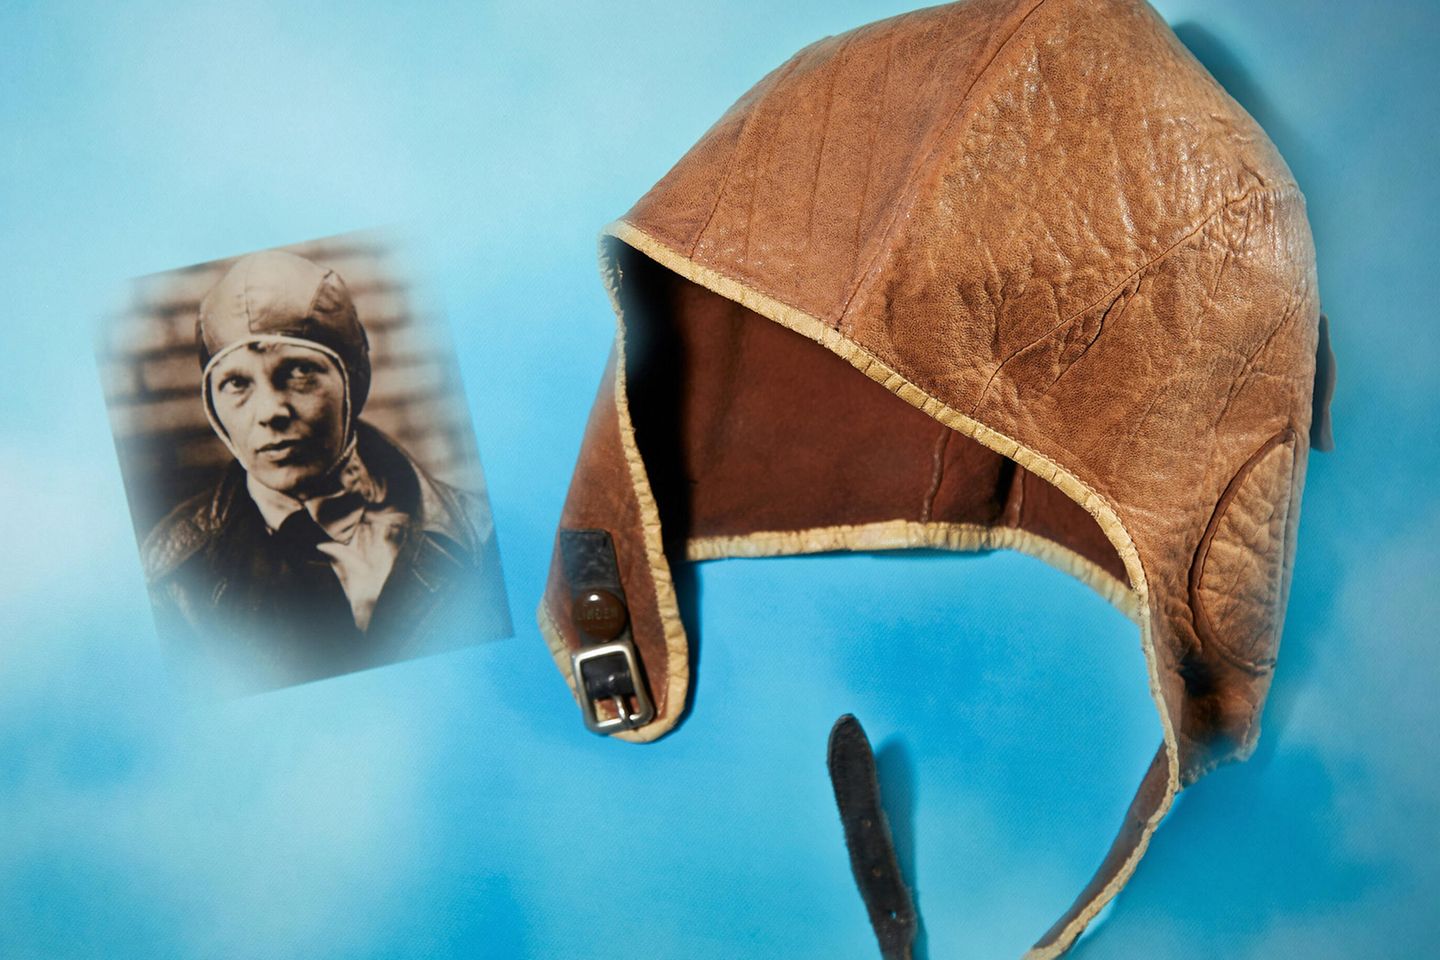 Dieses zusammengefügte, undatierte, vom Auktionshaus Heritage Auctions zur Verfügung gestellt Bild, zeigt eine Lederkappe, die die legendäre US-Pilotin Amelia Earhart 1928 bei einem Flug über den Atlantik trug